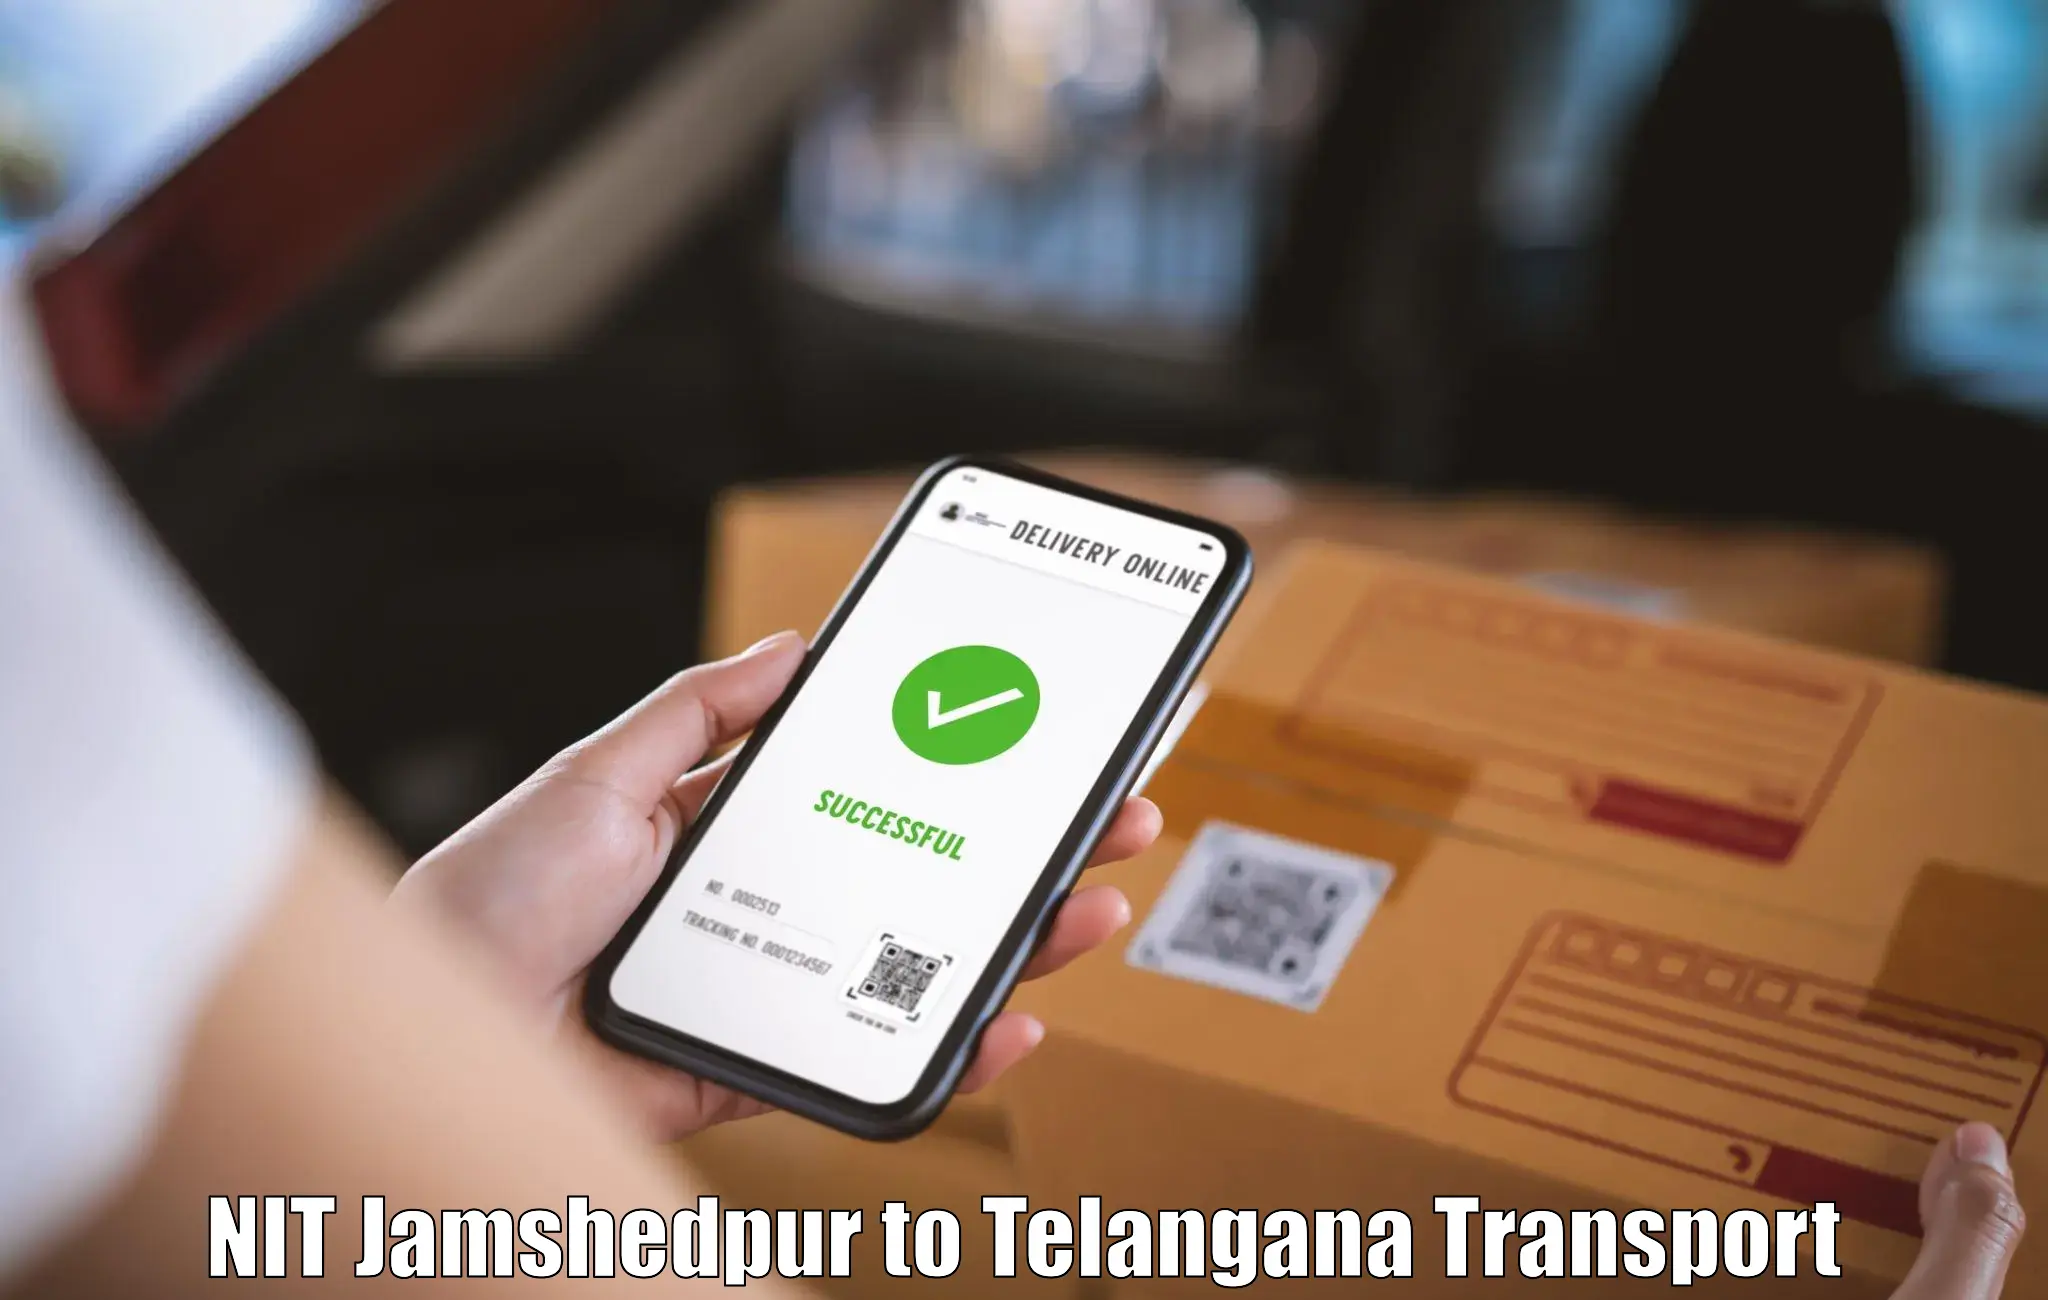 Transport shared services NIT Jamshedpur to Kaghaznagar